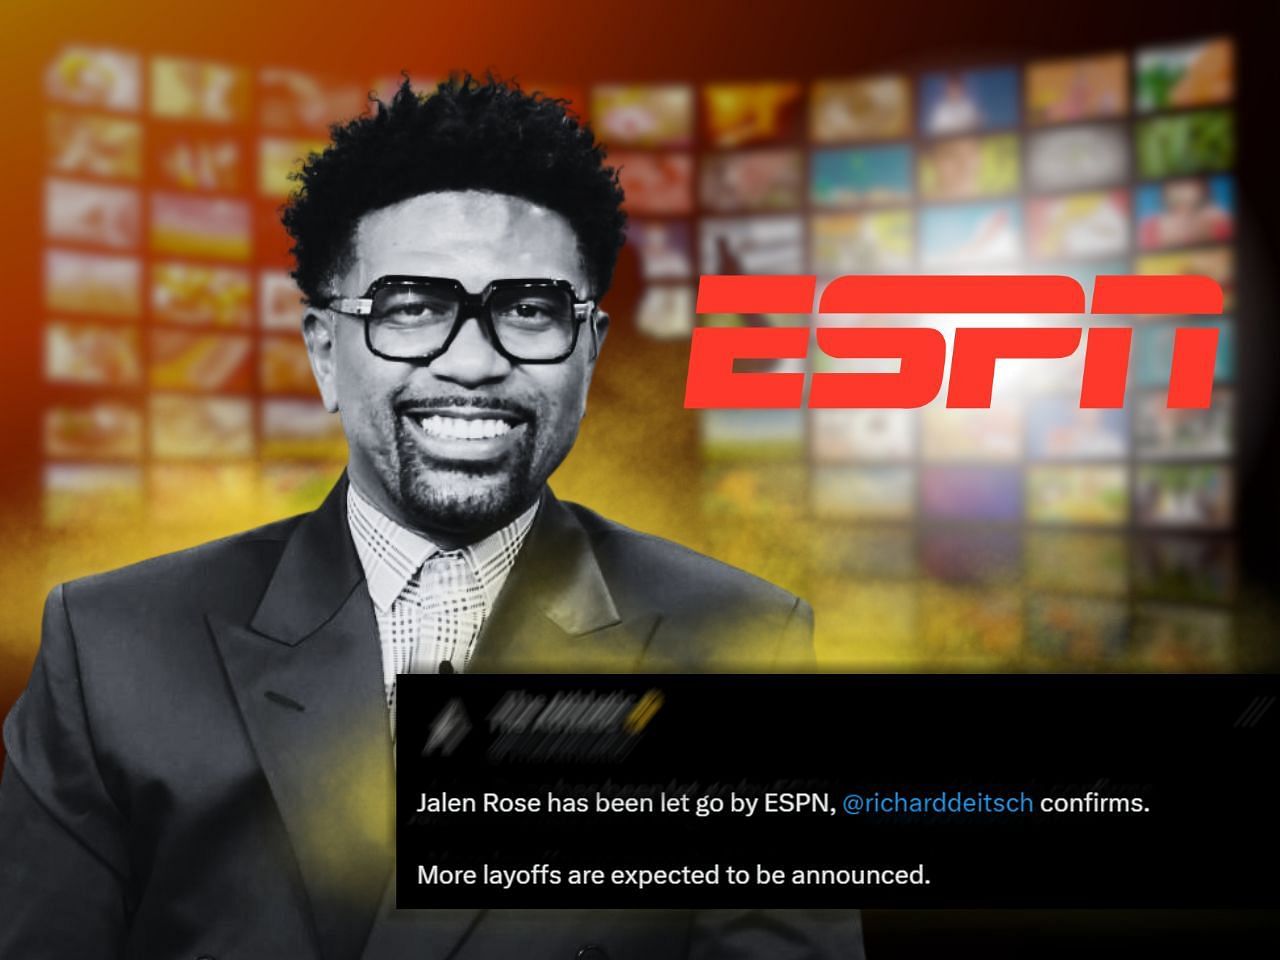 Why did ESPN let go of Jalen Rose?